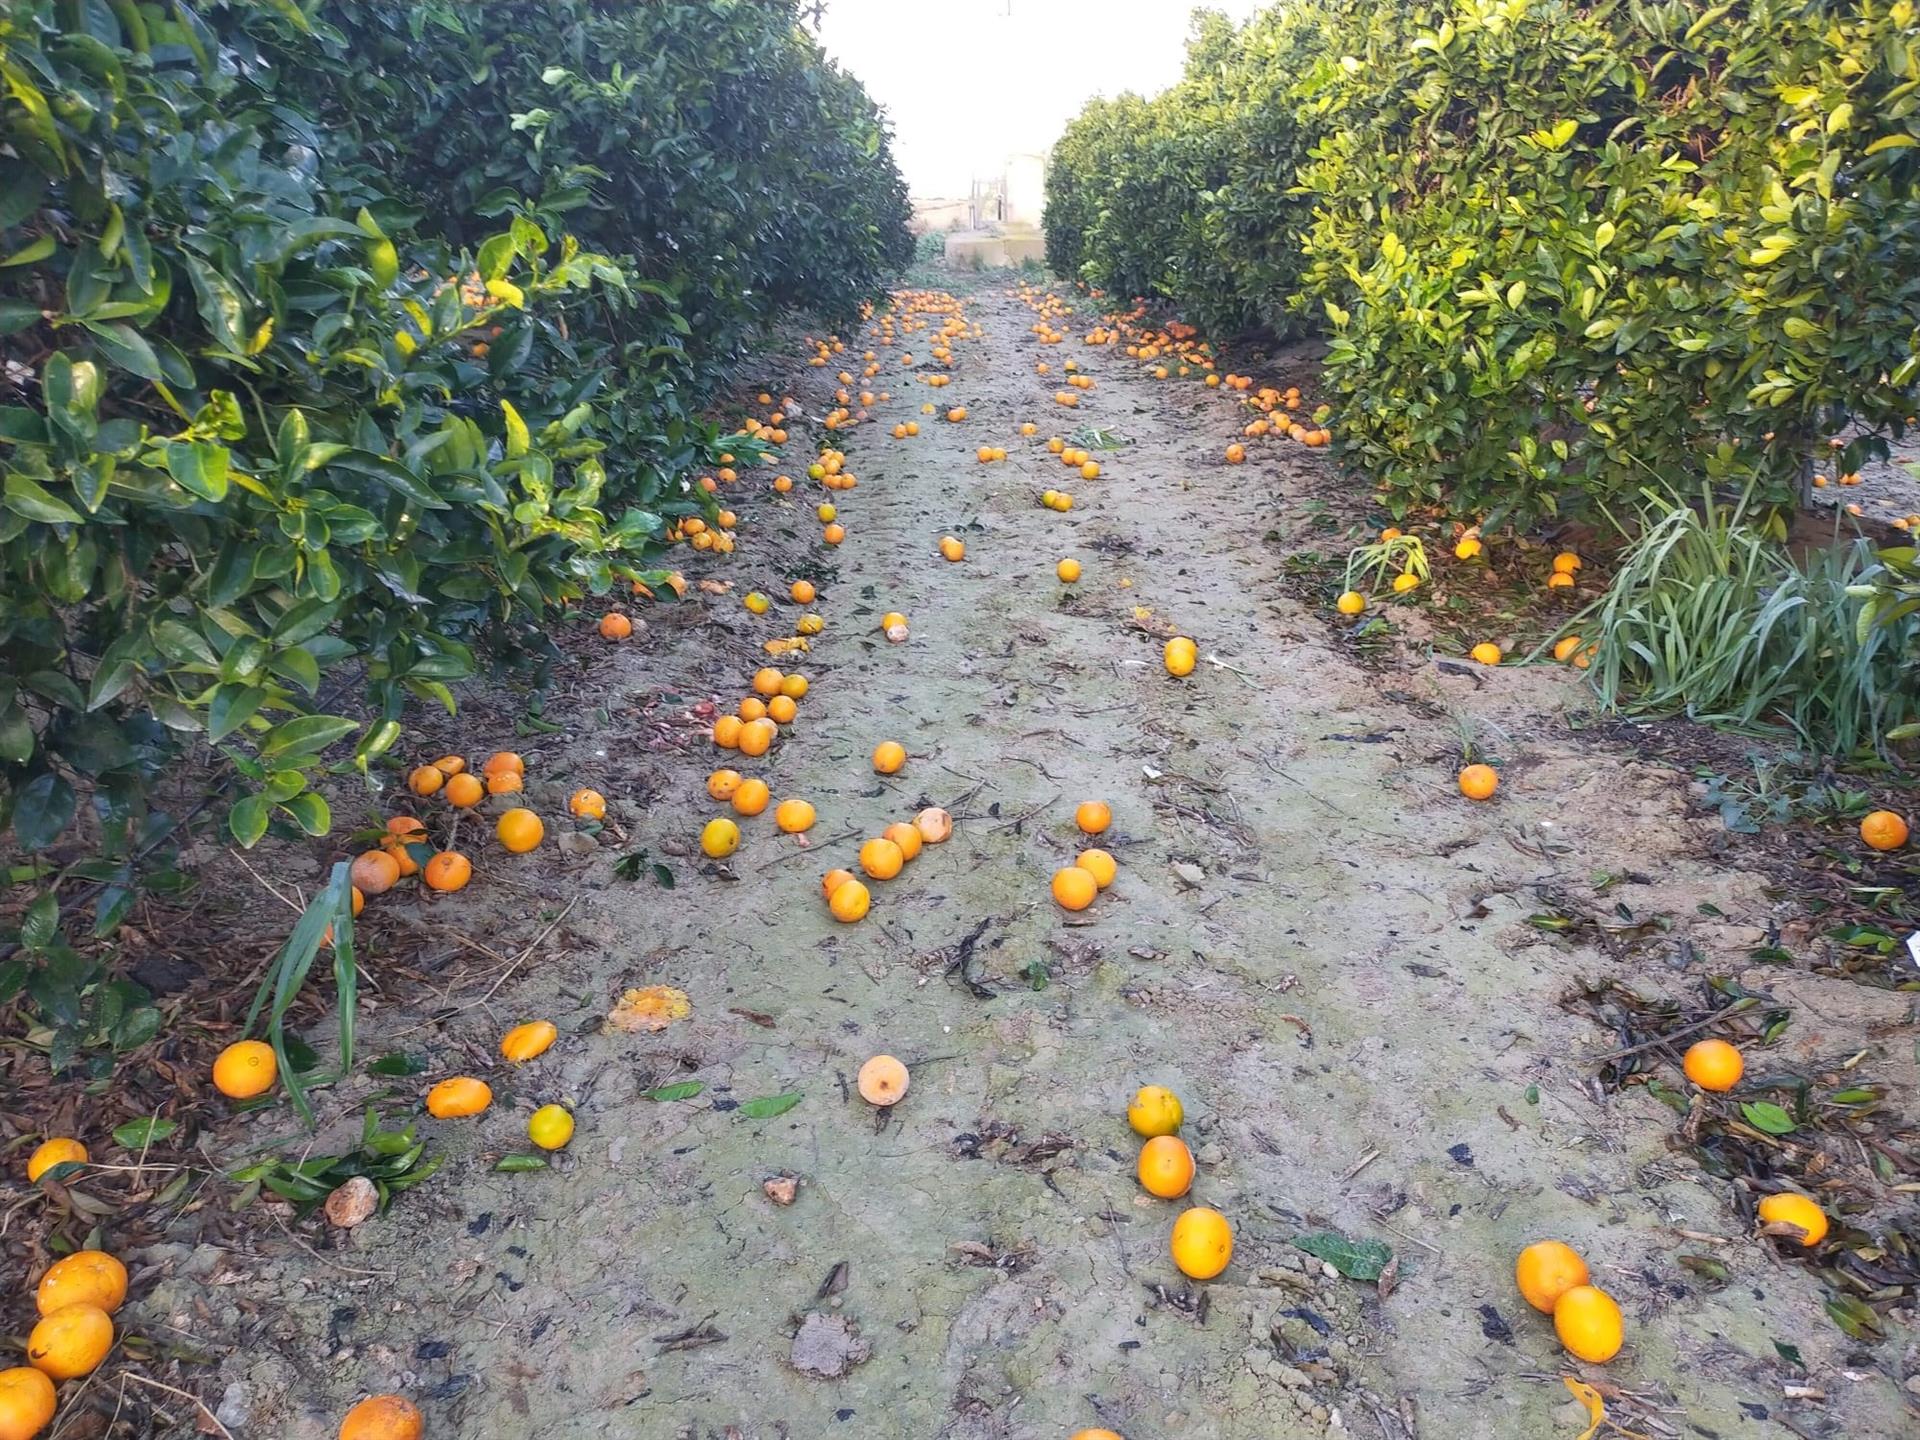 Asaja denuncia los bajos precios en el primer tramo de la campaña de la naranja, con pérdidas de 50 millones